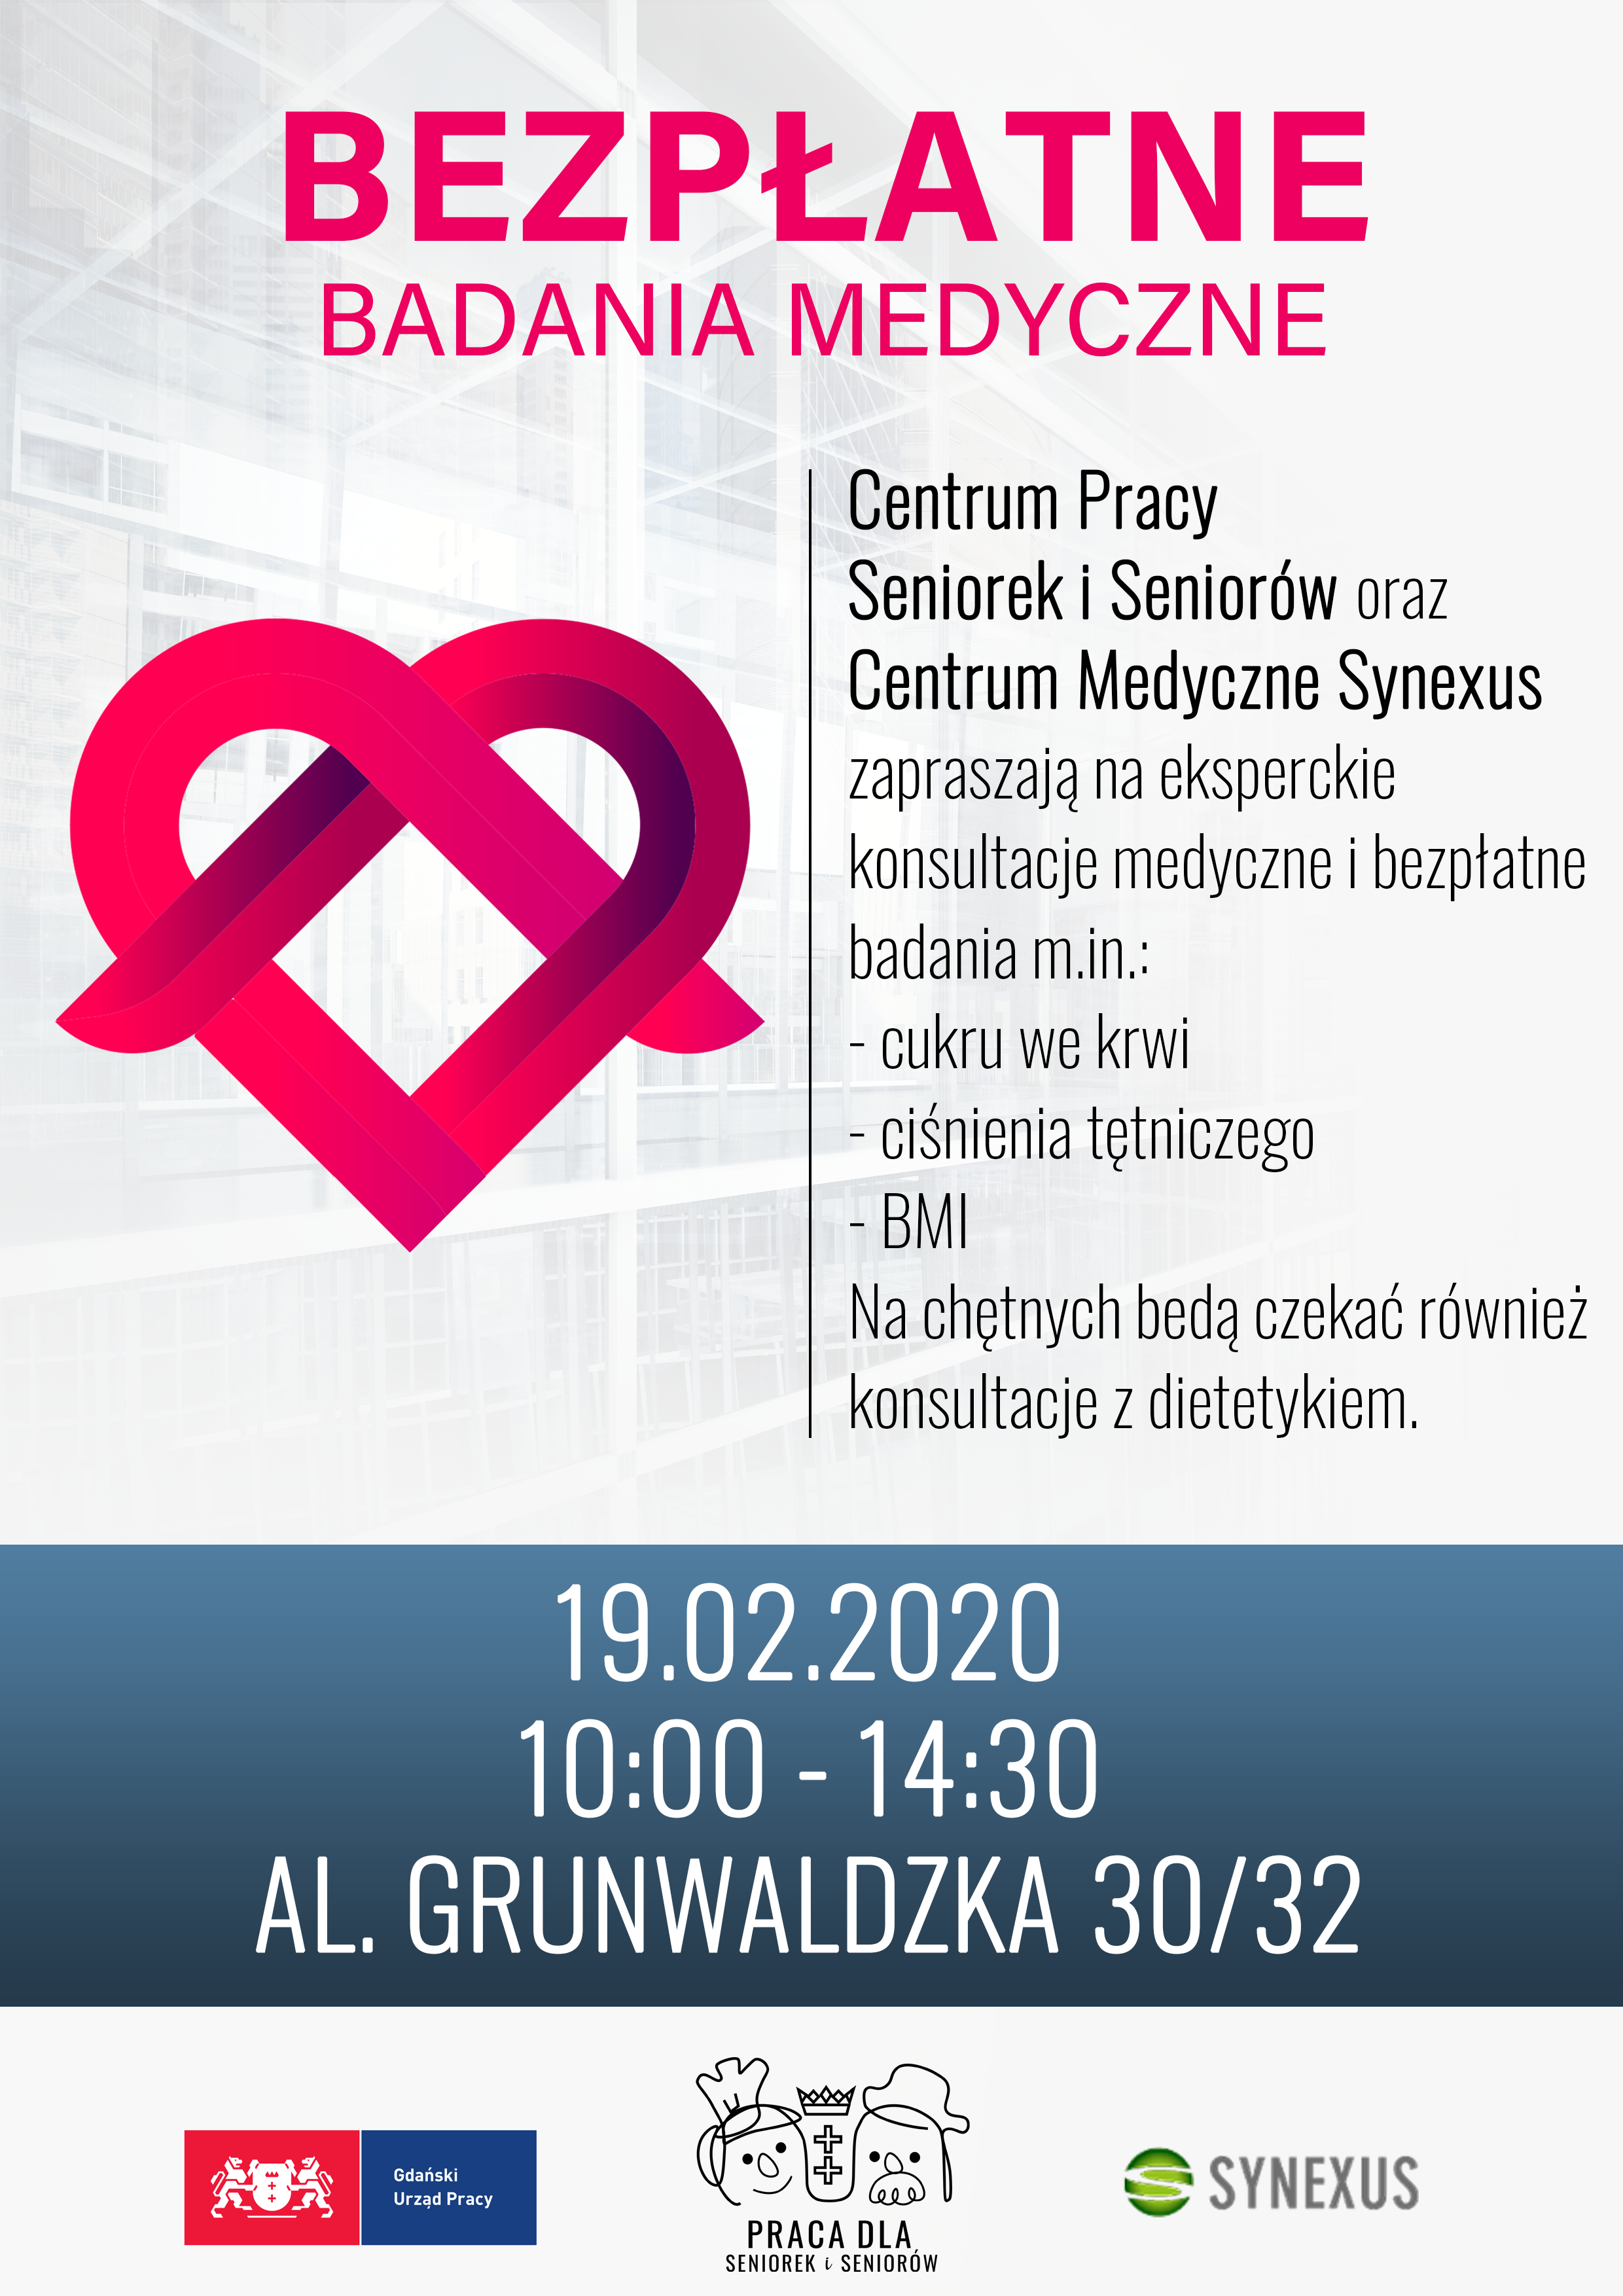 Plakat informacyjny dotyczący wydarzenia, które odbędzie się w Centrum Pracy Seniorek i Seniorów w dniu 19.02.2020 r. pt. 